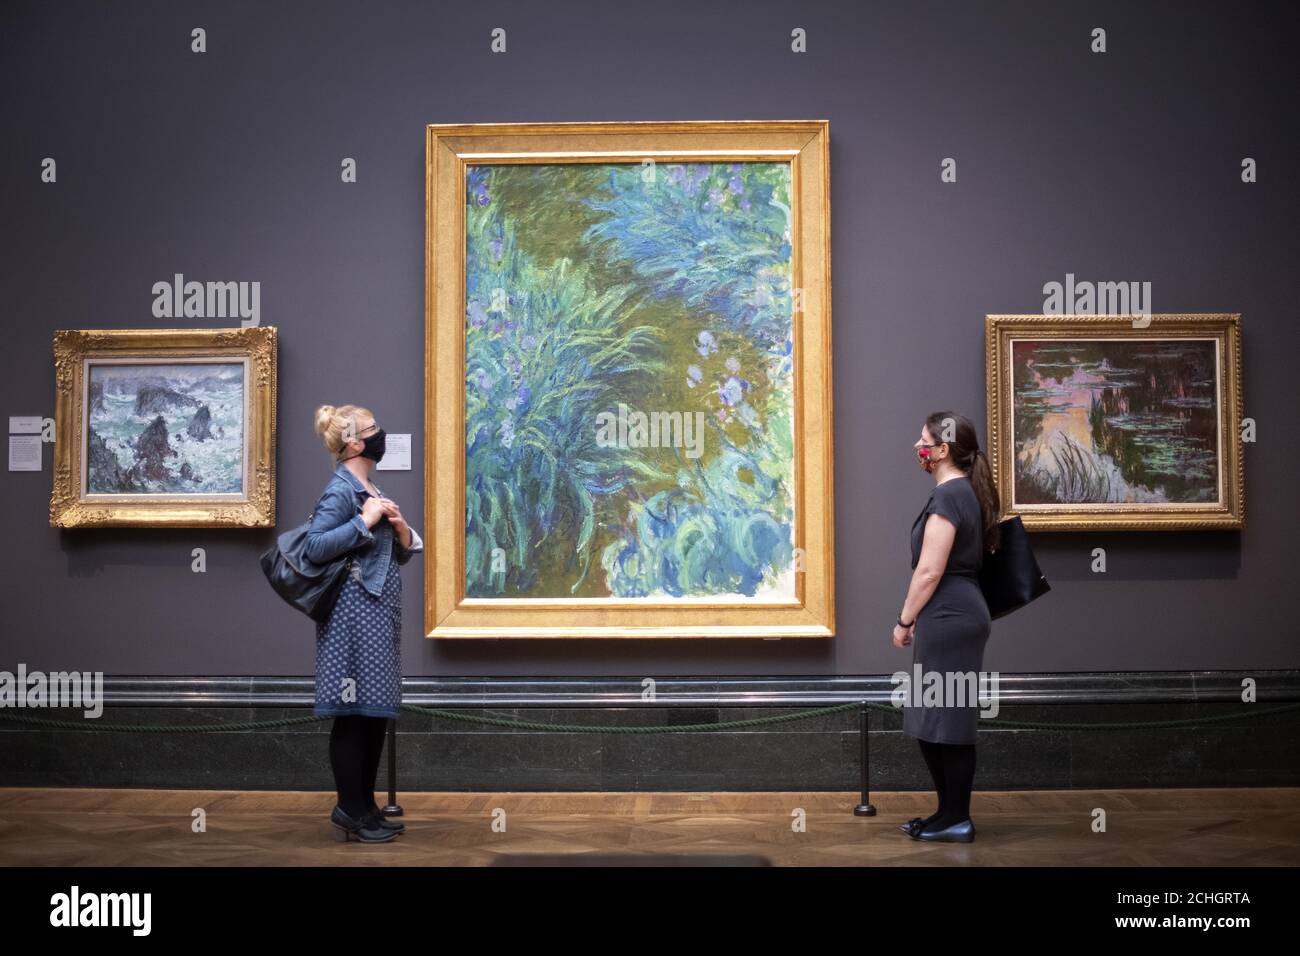 IMBARCATO AL 1700 SABATO 4 LUGLIO i visitatori che indossano PPE si levano in piedi come la vista Irises, 1914-17, da Claude Monet, alla National Portrait Gallery, Londra, mentre si prepara a riaprire dopo l'allentamento delle restrizioni di blocco coronavirus in tutta l'Inghilterra. Foto Stock